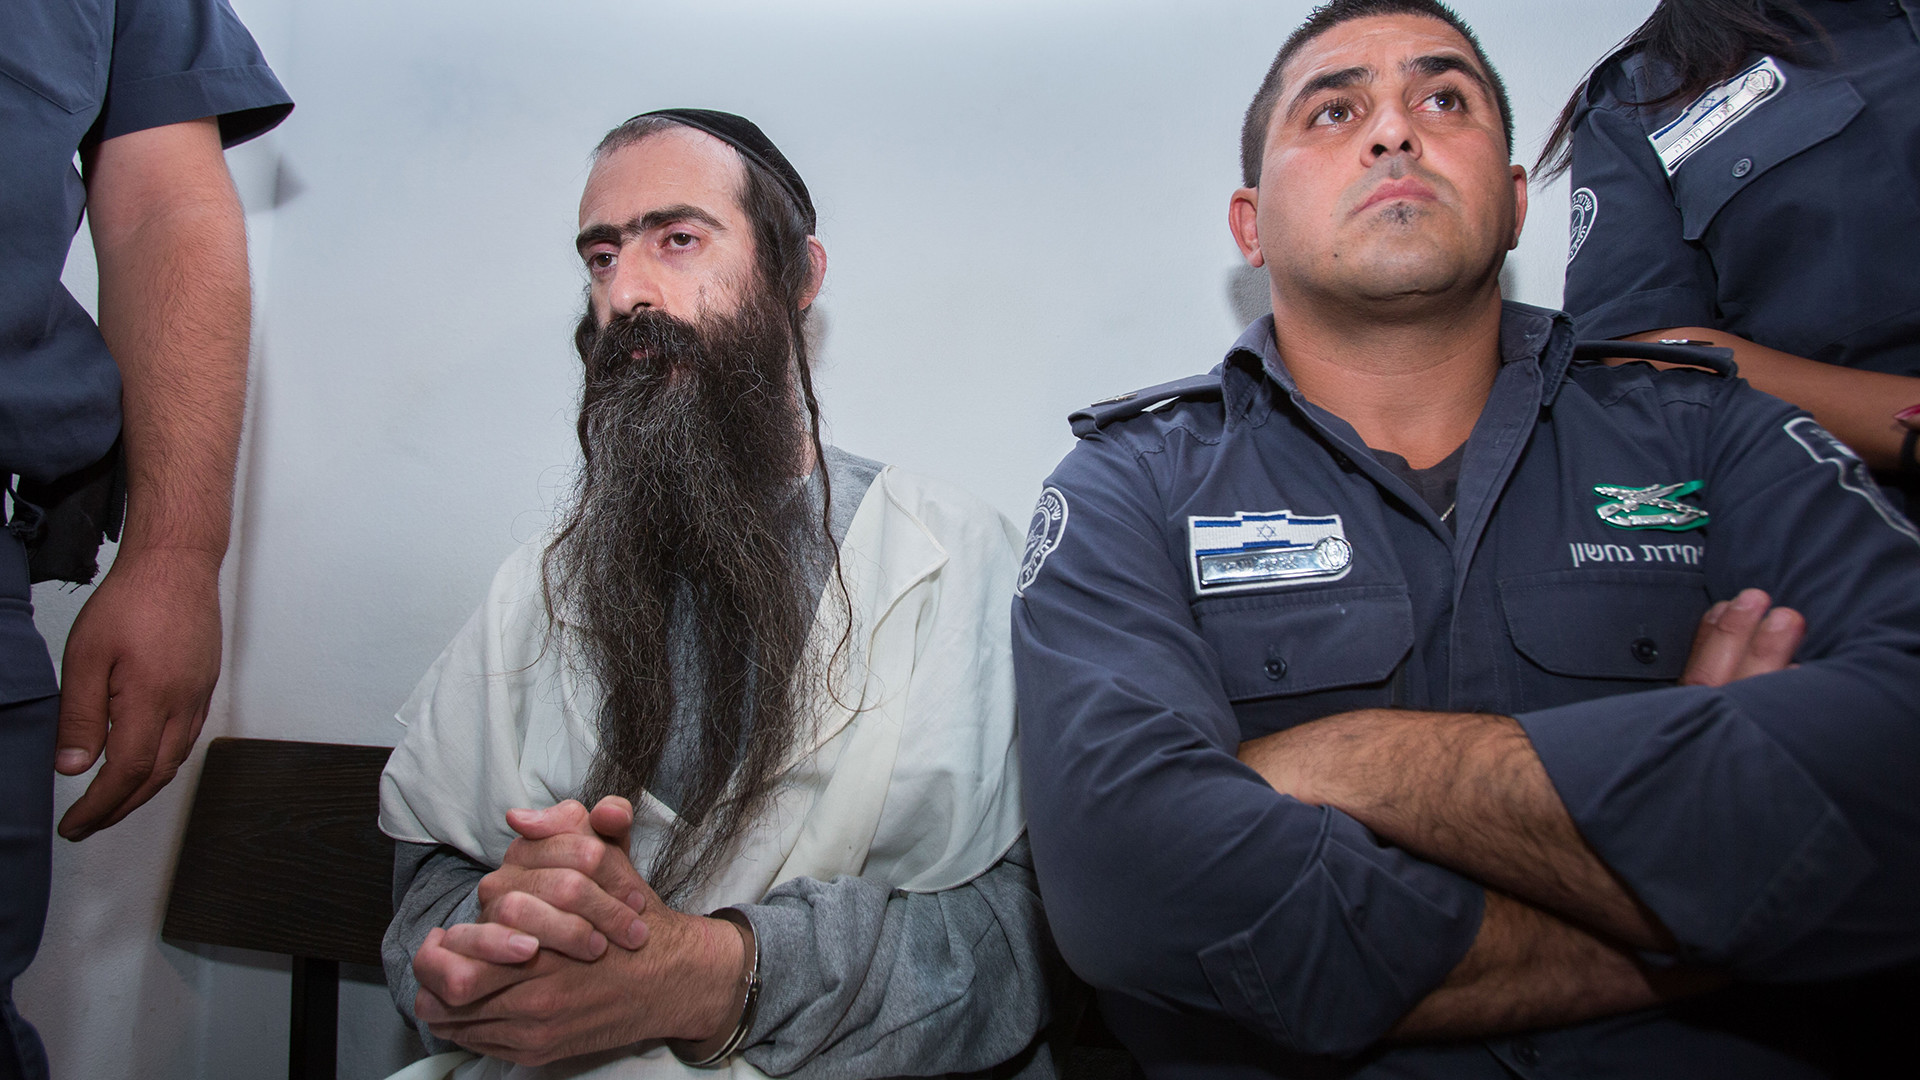 Yishai Schlissel, juif ultra-orthodoxe, a poignardé six personnes - dont une est morte - lors de la Gay pride de Jérusalem le 31 juillet 2015.  (Photo: Keystone)